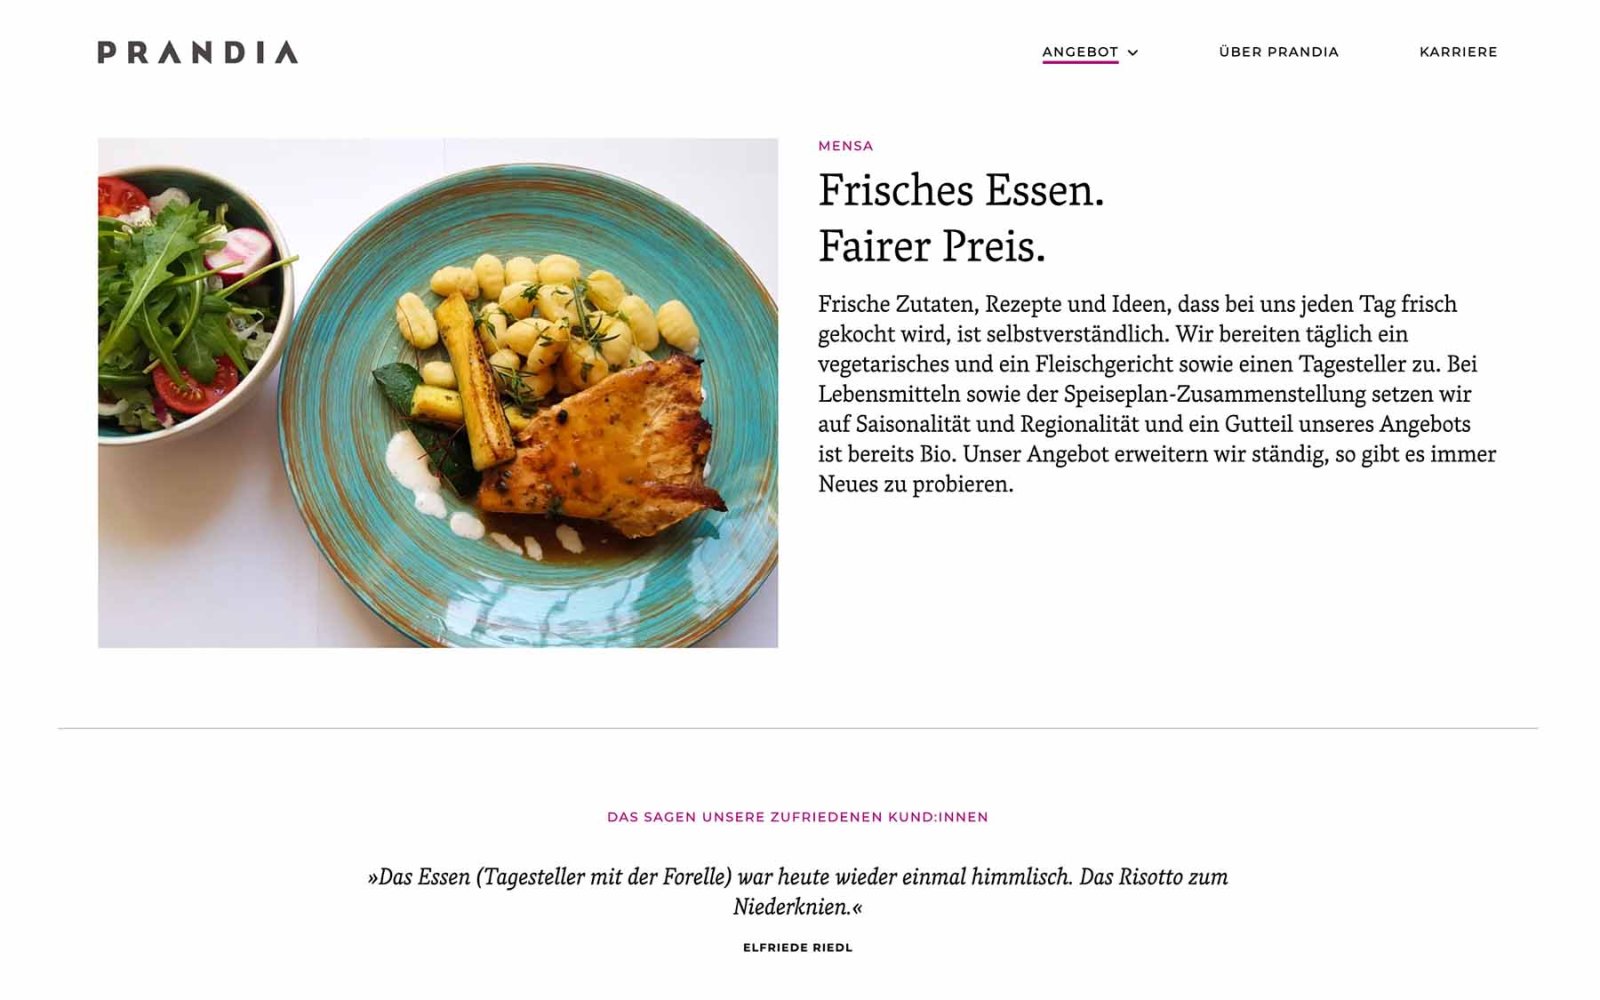 Gastronomie-Website Prandia – Angebote Mensa. Beschreibender Text mit großem Bild und Zitat.